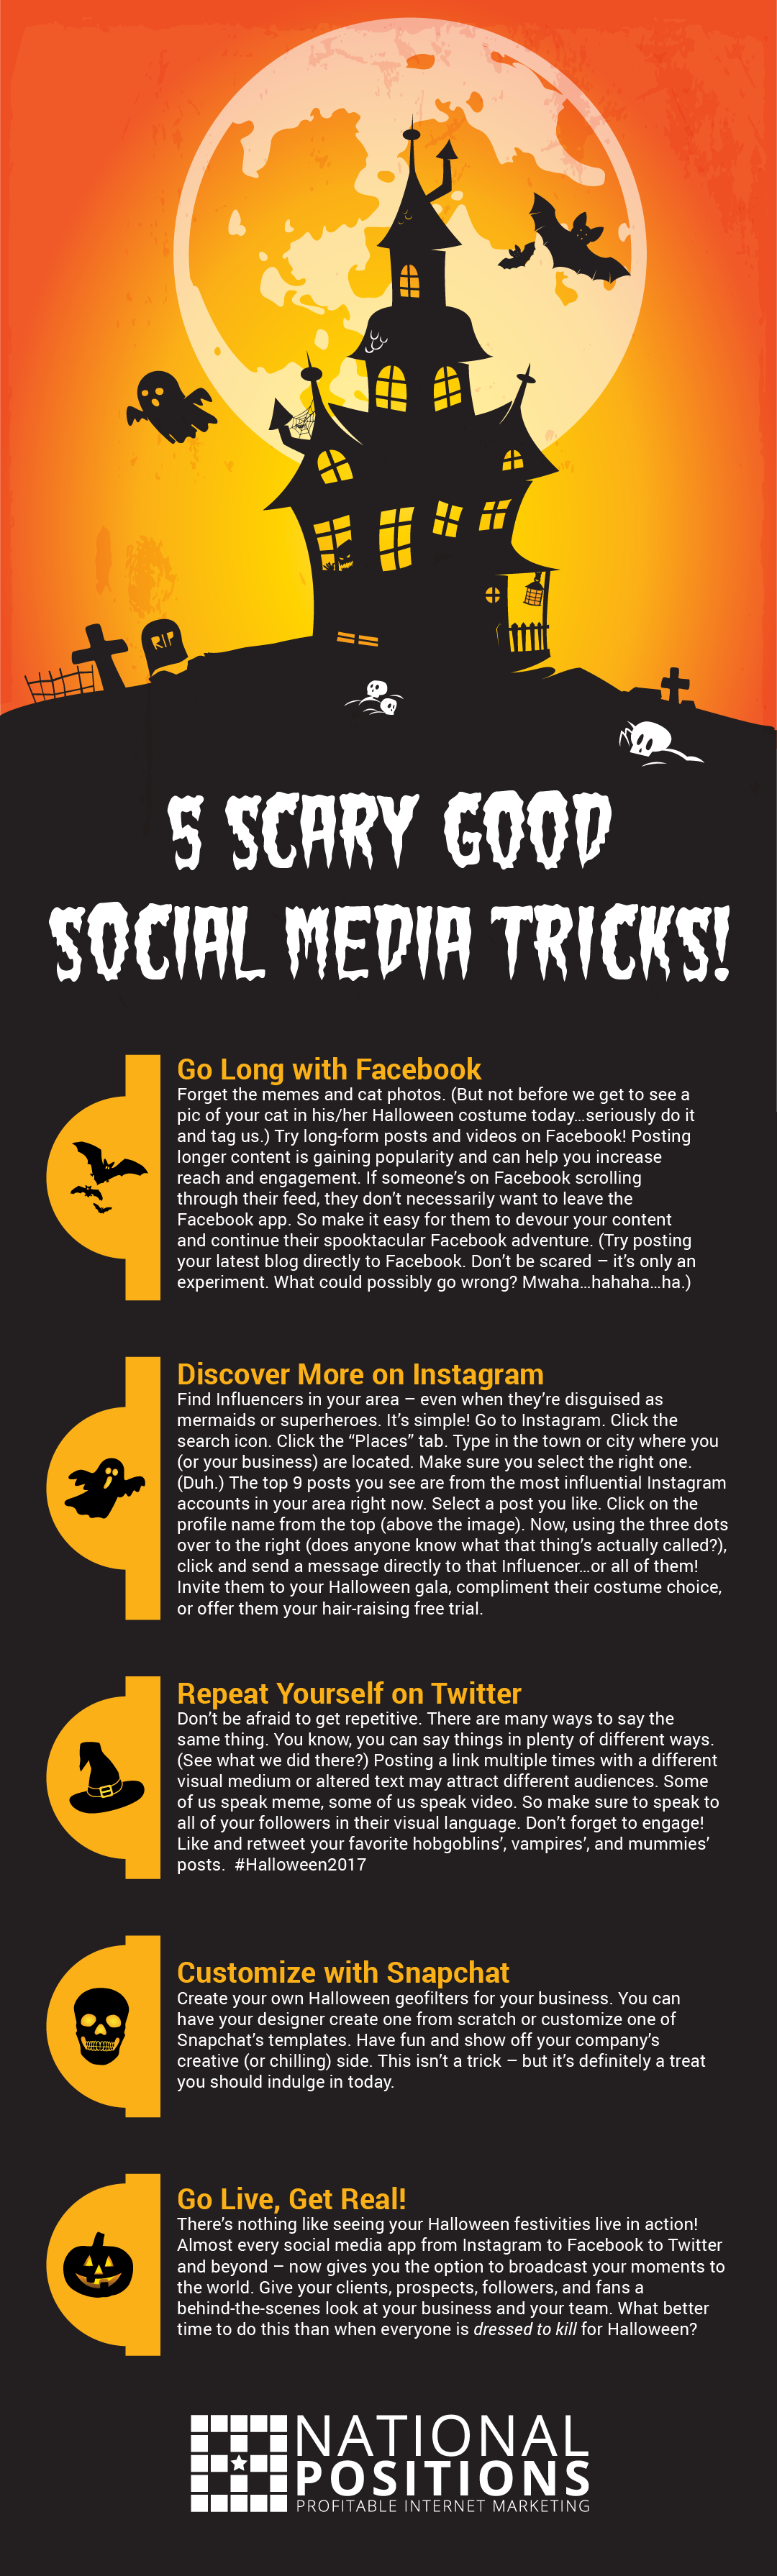 Social Media Tricks 